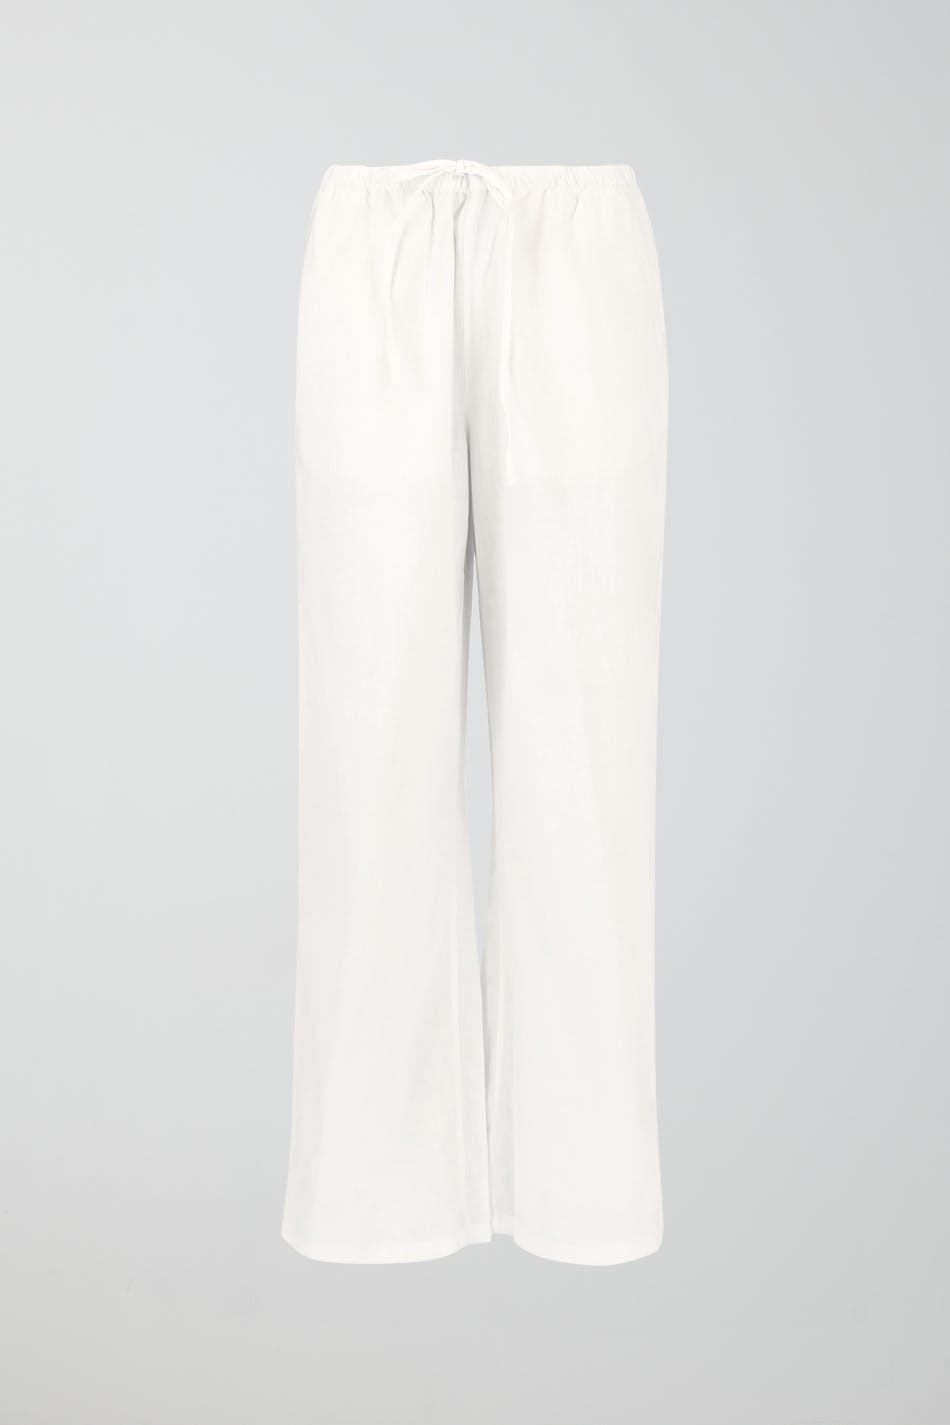 Gina Tricot - Tall linen blend trousers - hørbukser- White - XXL - Female